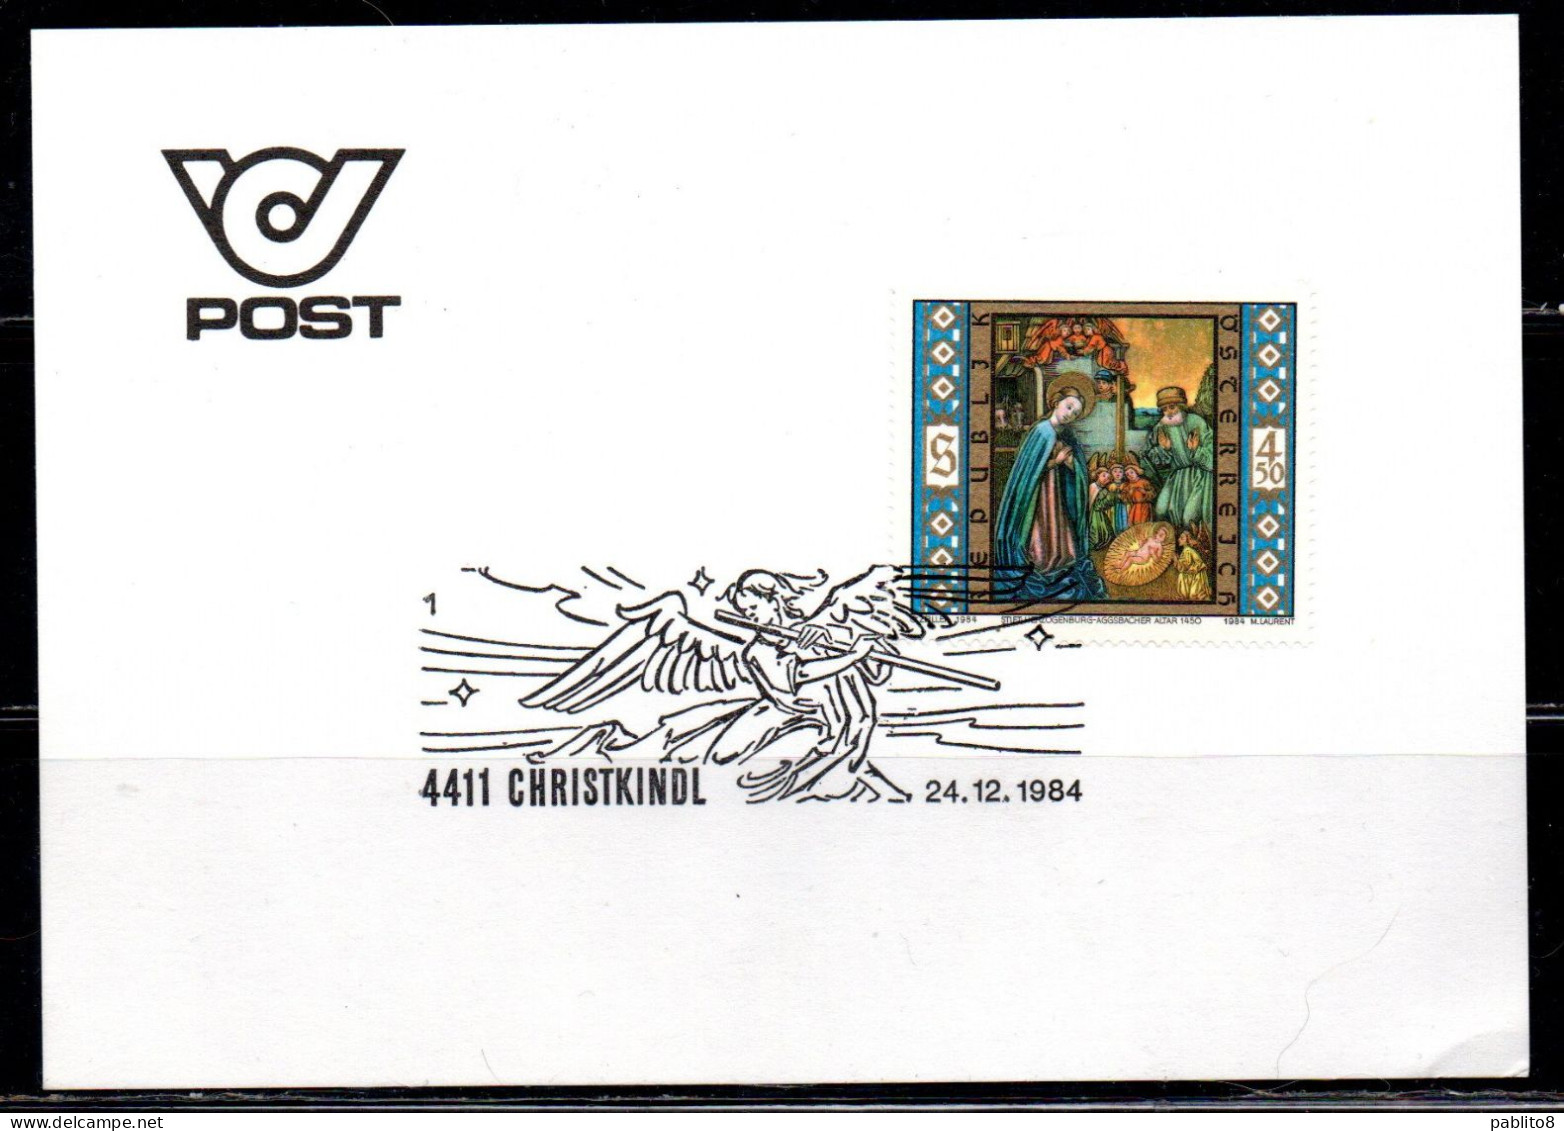 AUSTRIA ÖSTERREICH 24 12 1984 CHRISTMAS WEIHNACHTEN NATALE NOEL 4.50s FDC CARD KARTE CARTOLINA ENTIRE SPECIAL CANCEL - Postkarten